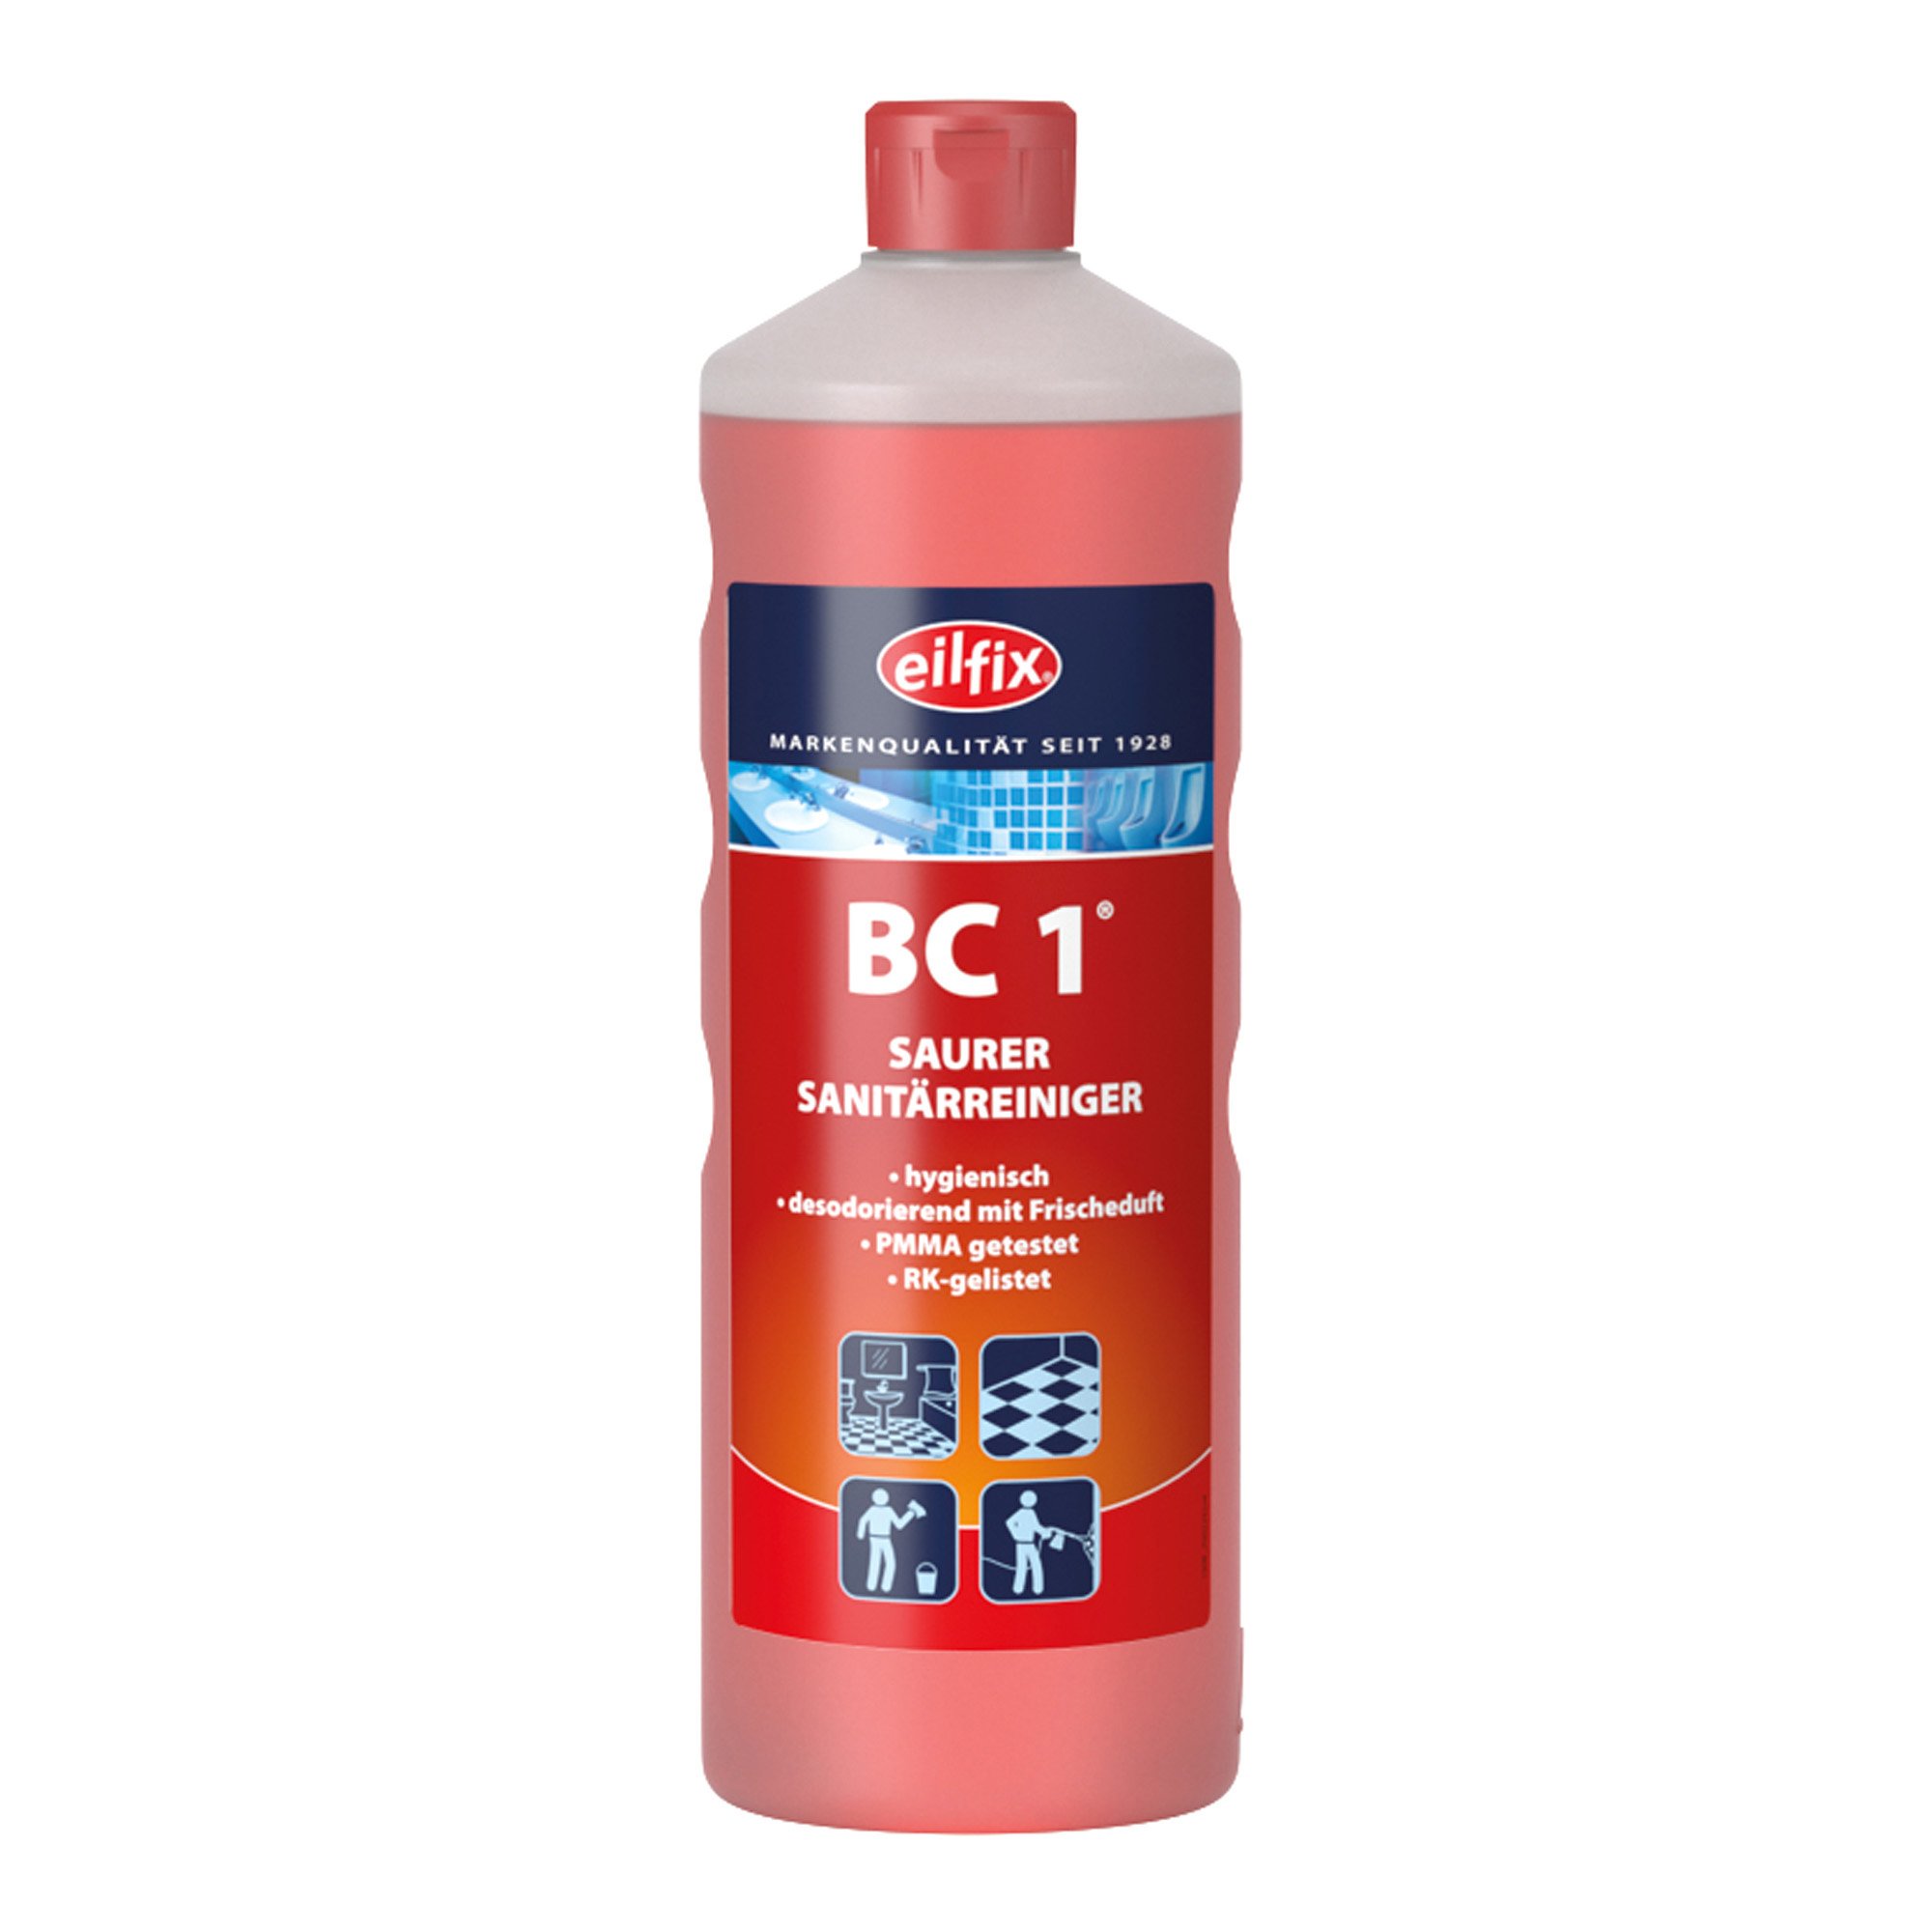 Eilfix BC 1 Sanitärreiniger 1 Liter Flasche 100153-001-000_1